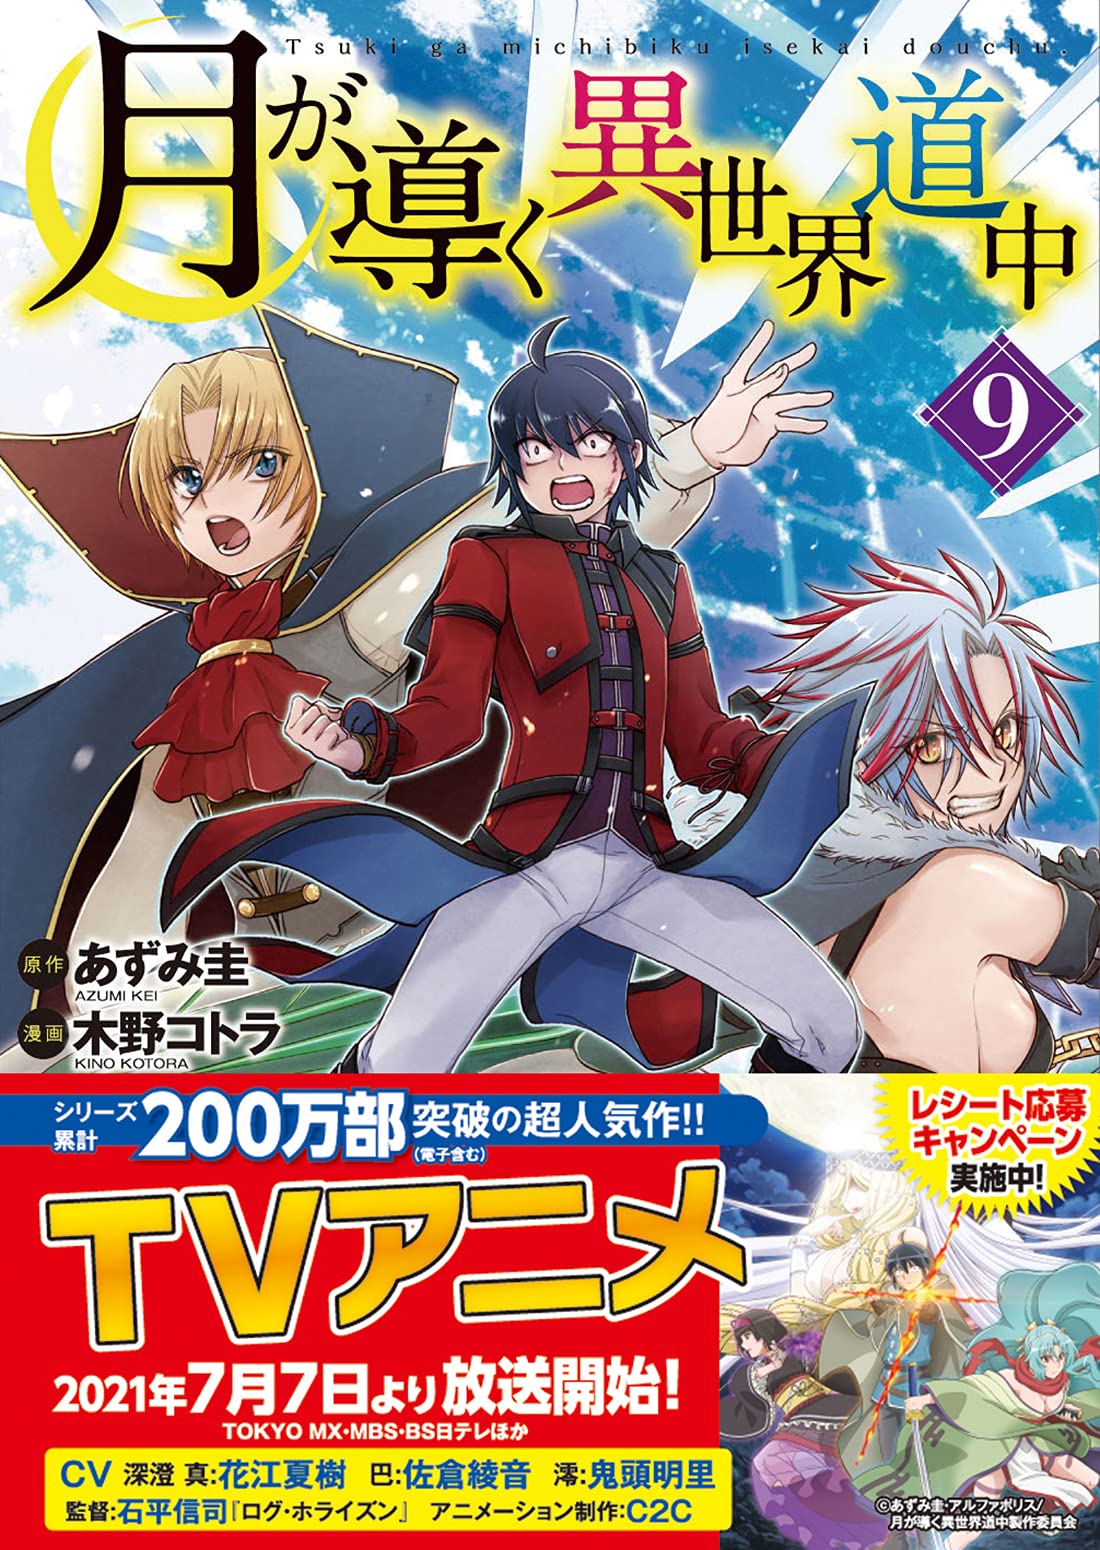 DVD Anime Tsukimichi Moonlit Fantasy / Tsuki ga Michibiku Isekai